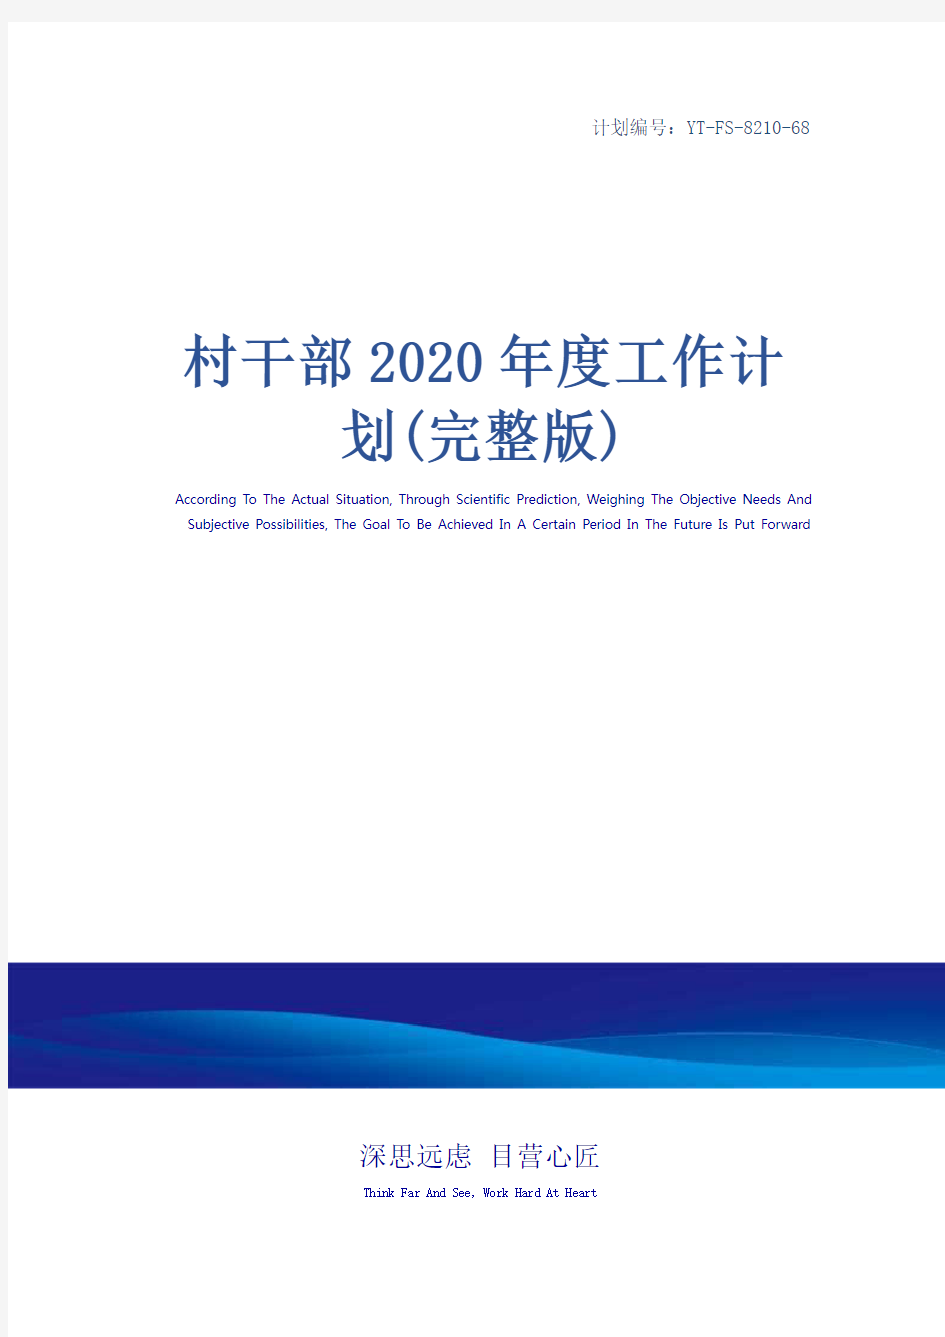 村干部2020年度工作计划(完整版)